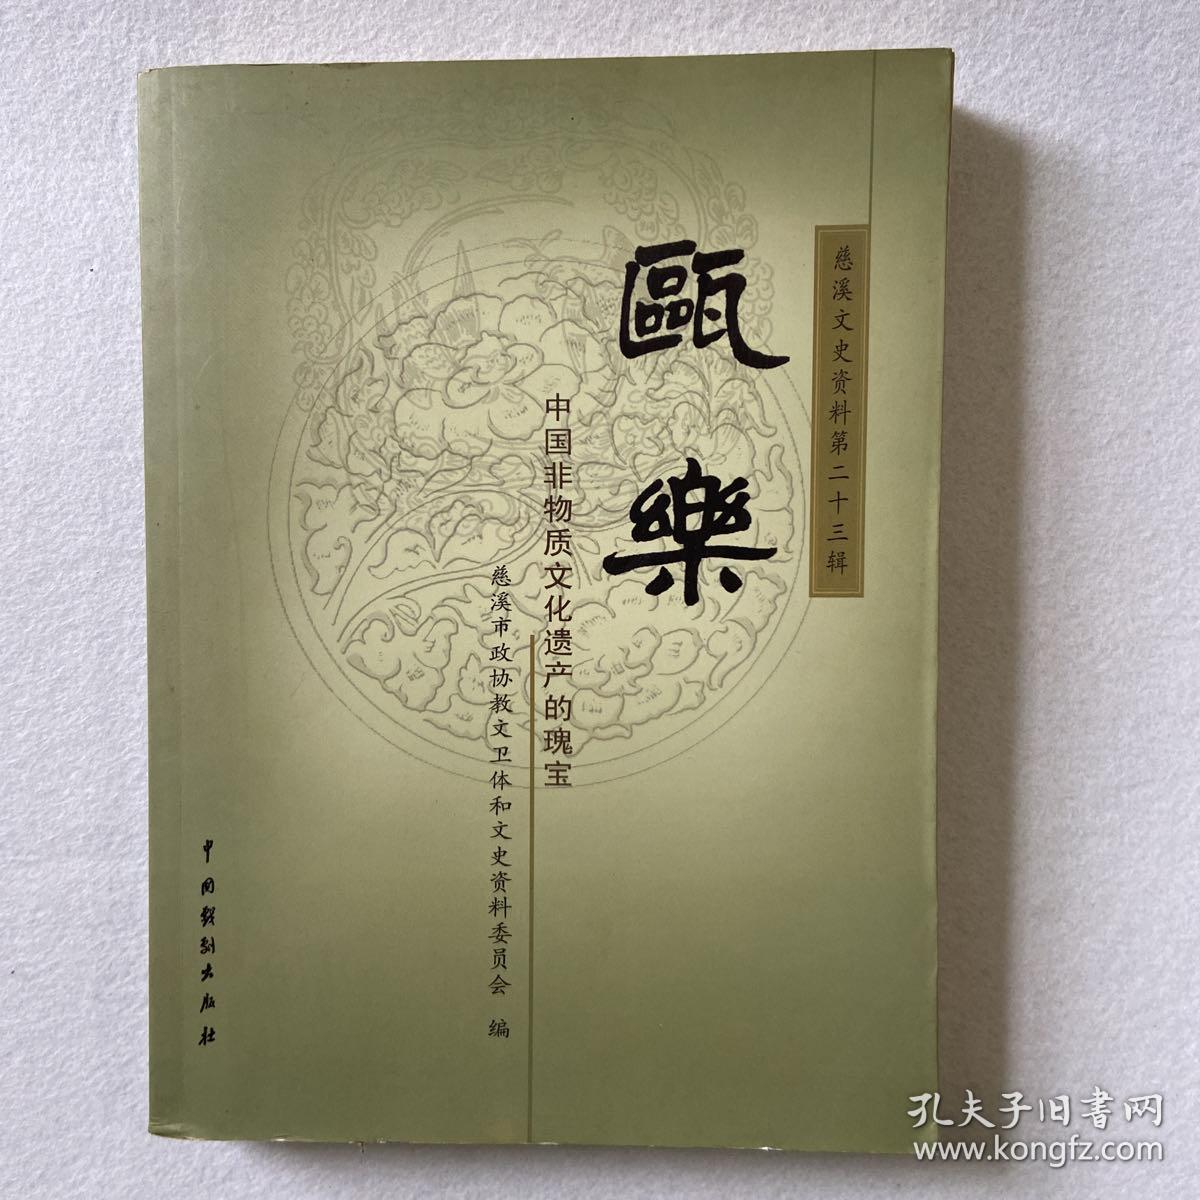 瓯乐 中国非物质文化遗产的瑰宝 慈溪文史资料第二十三辑 102-33